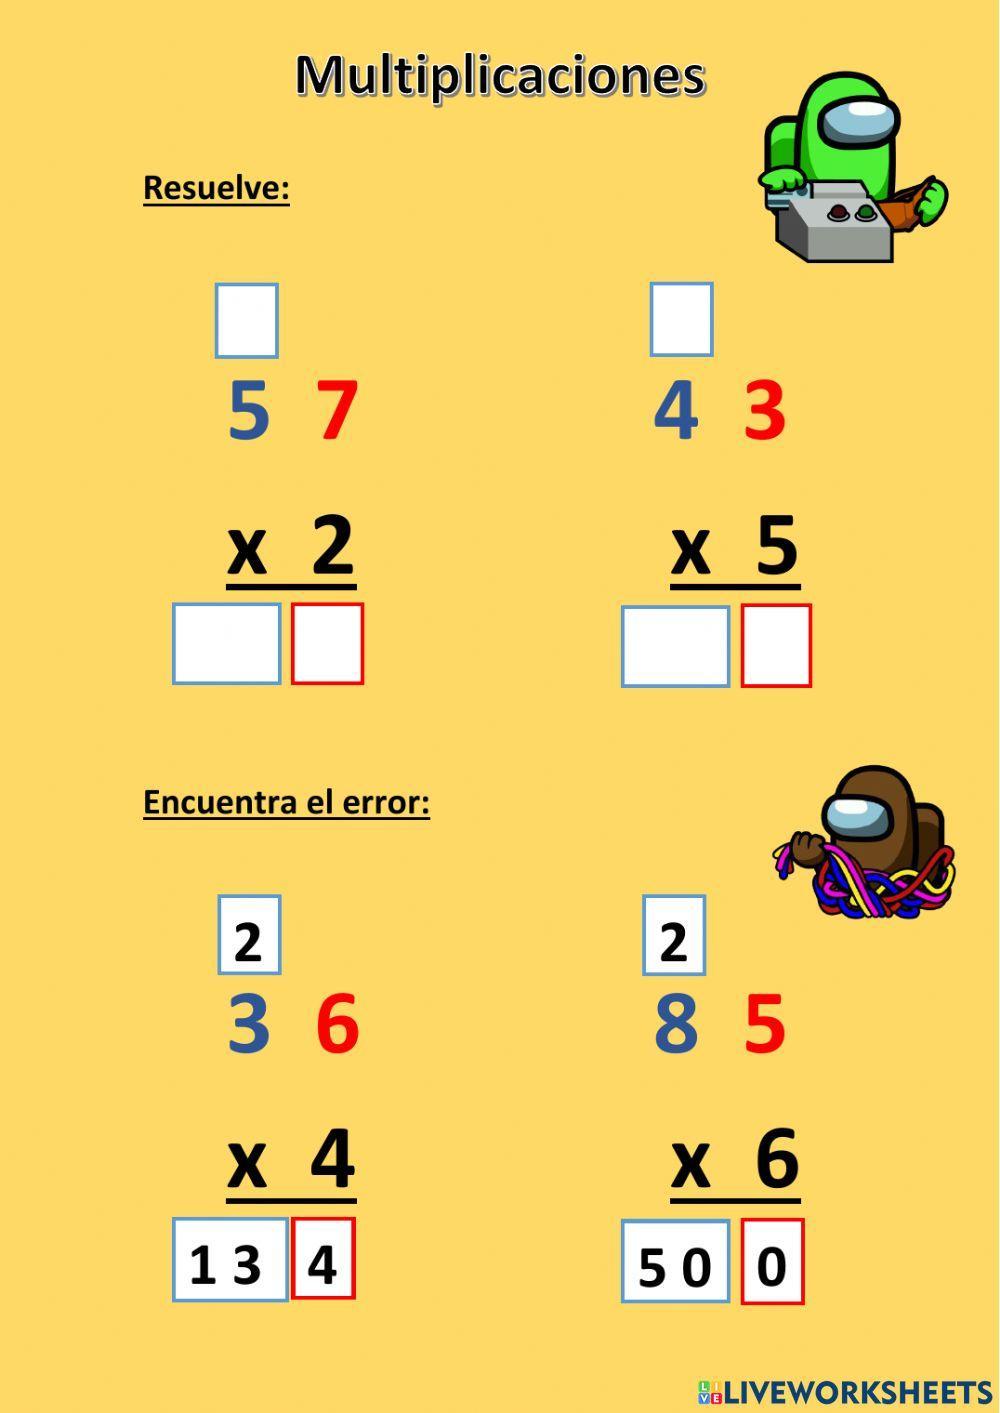 Multiplicaciones de una cifra